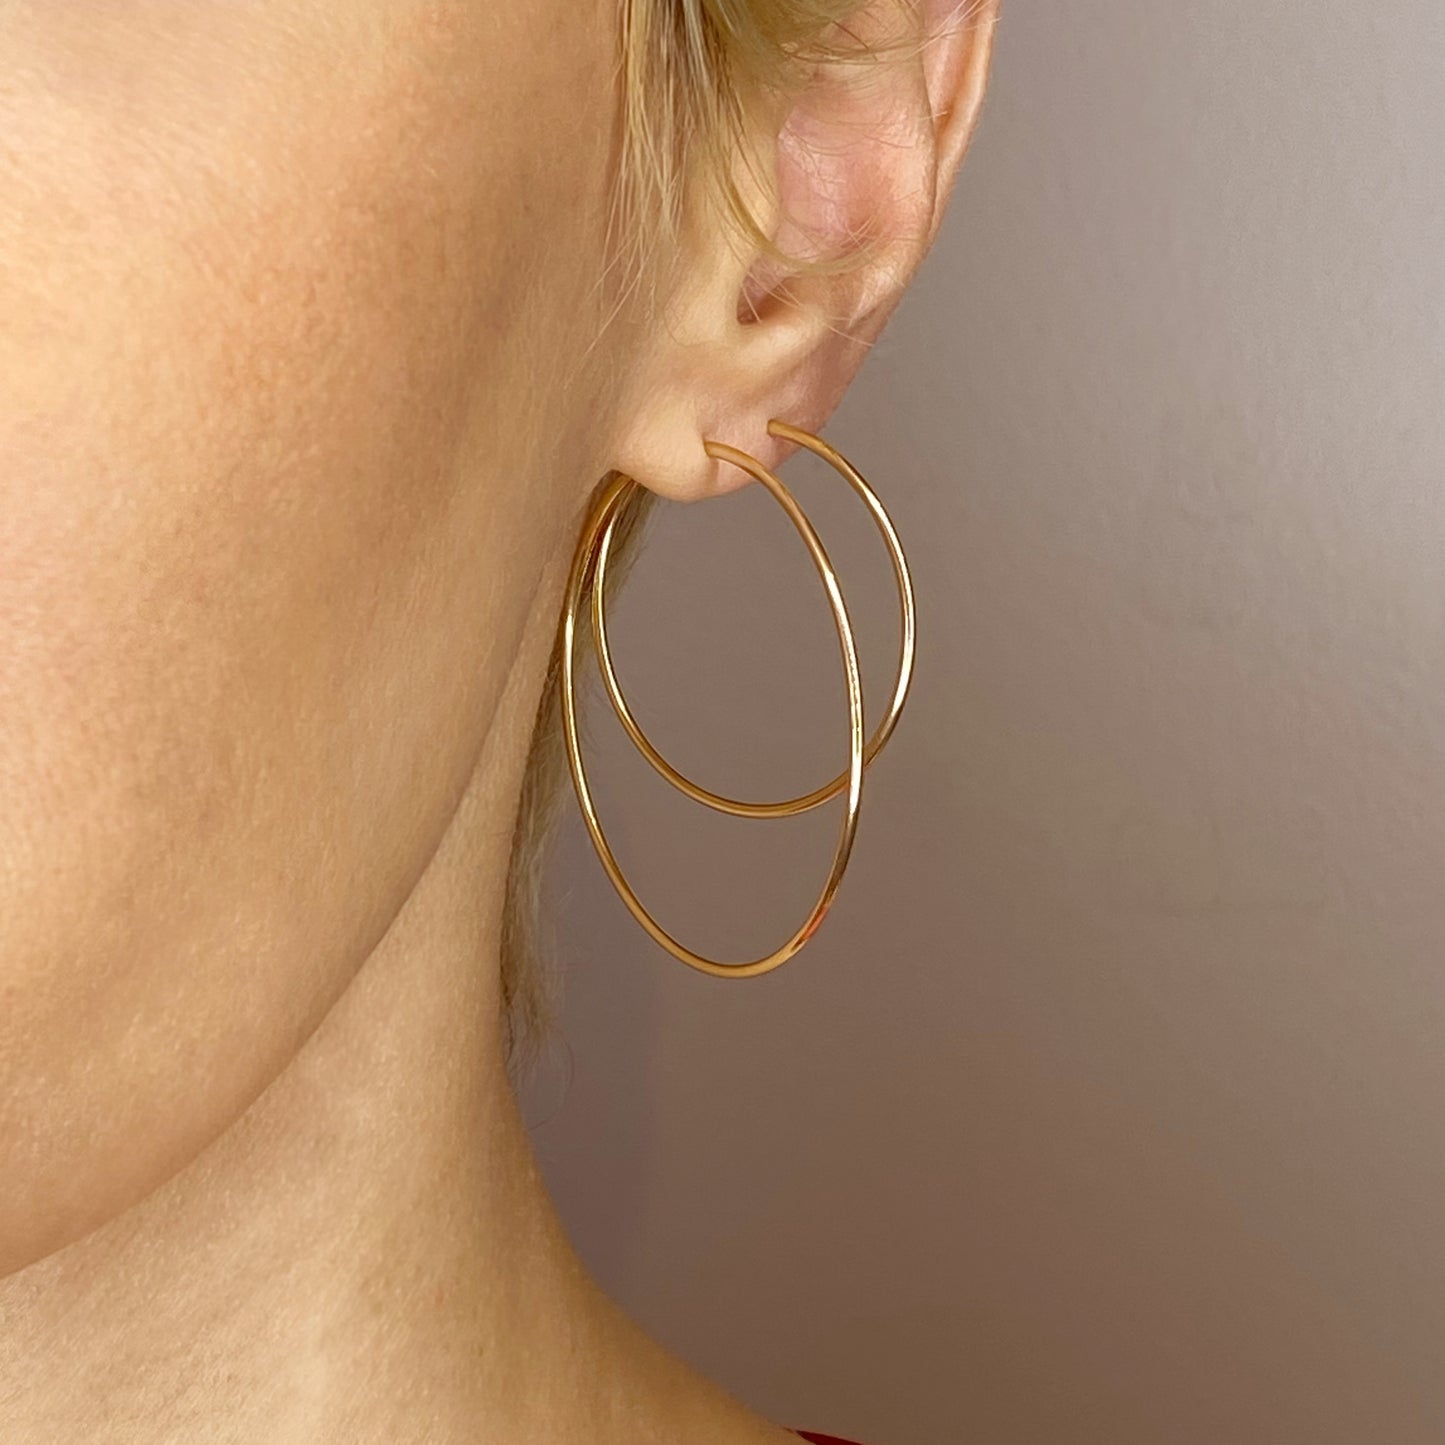 14k gold Endless Hoop Earrings styled on a ear